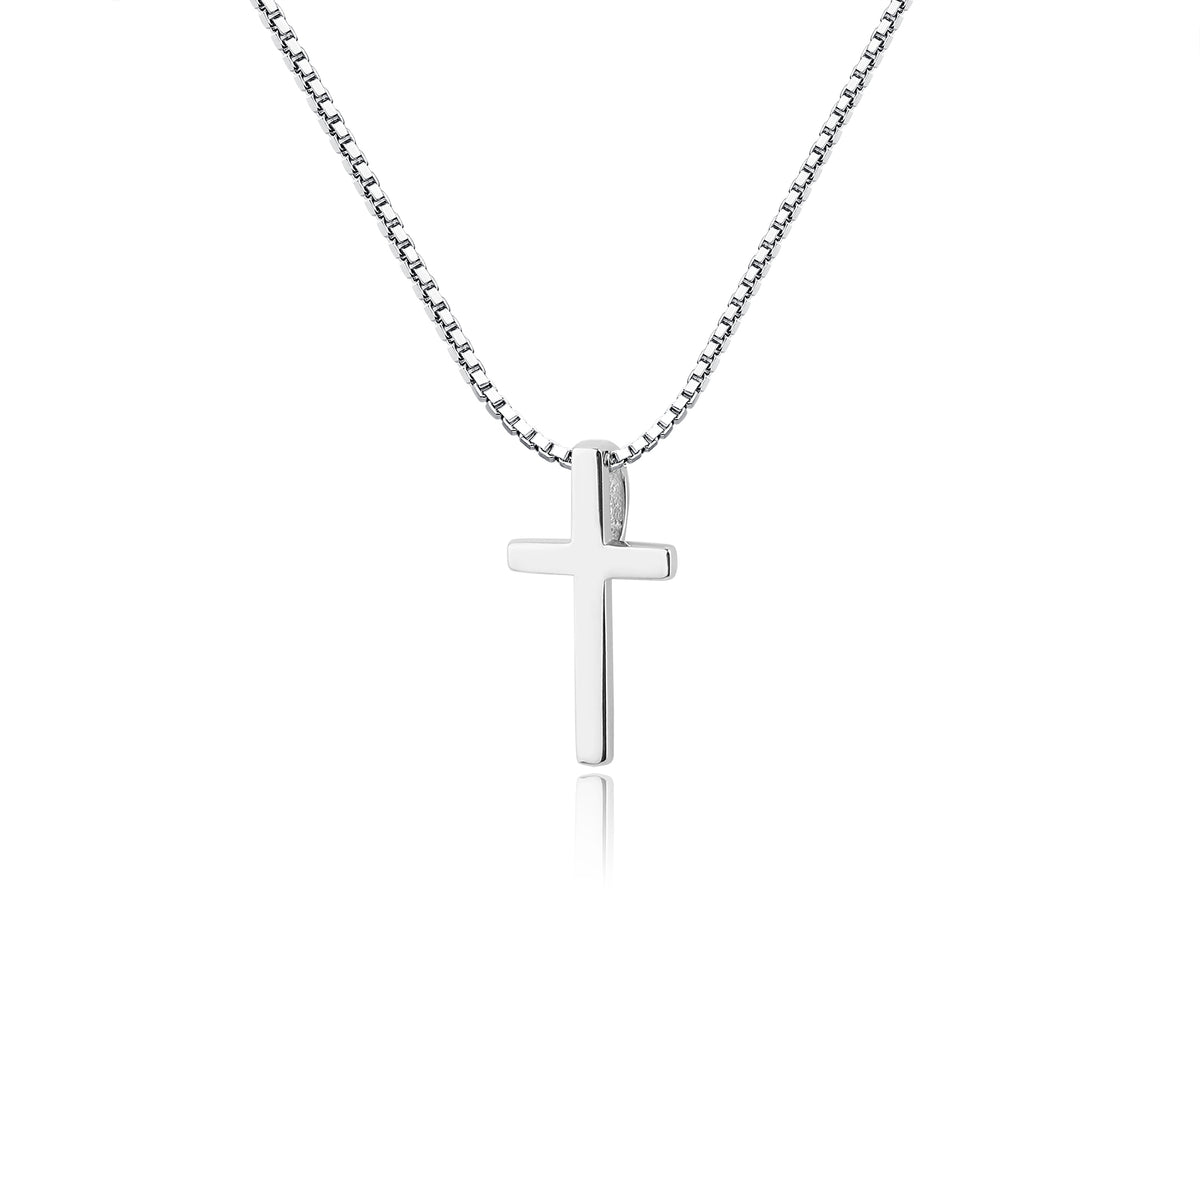 Small Cross Bracelet for Children/ First Communion Gift. 